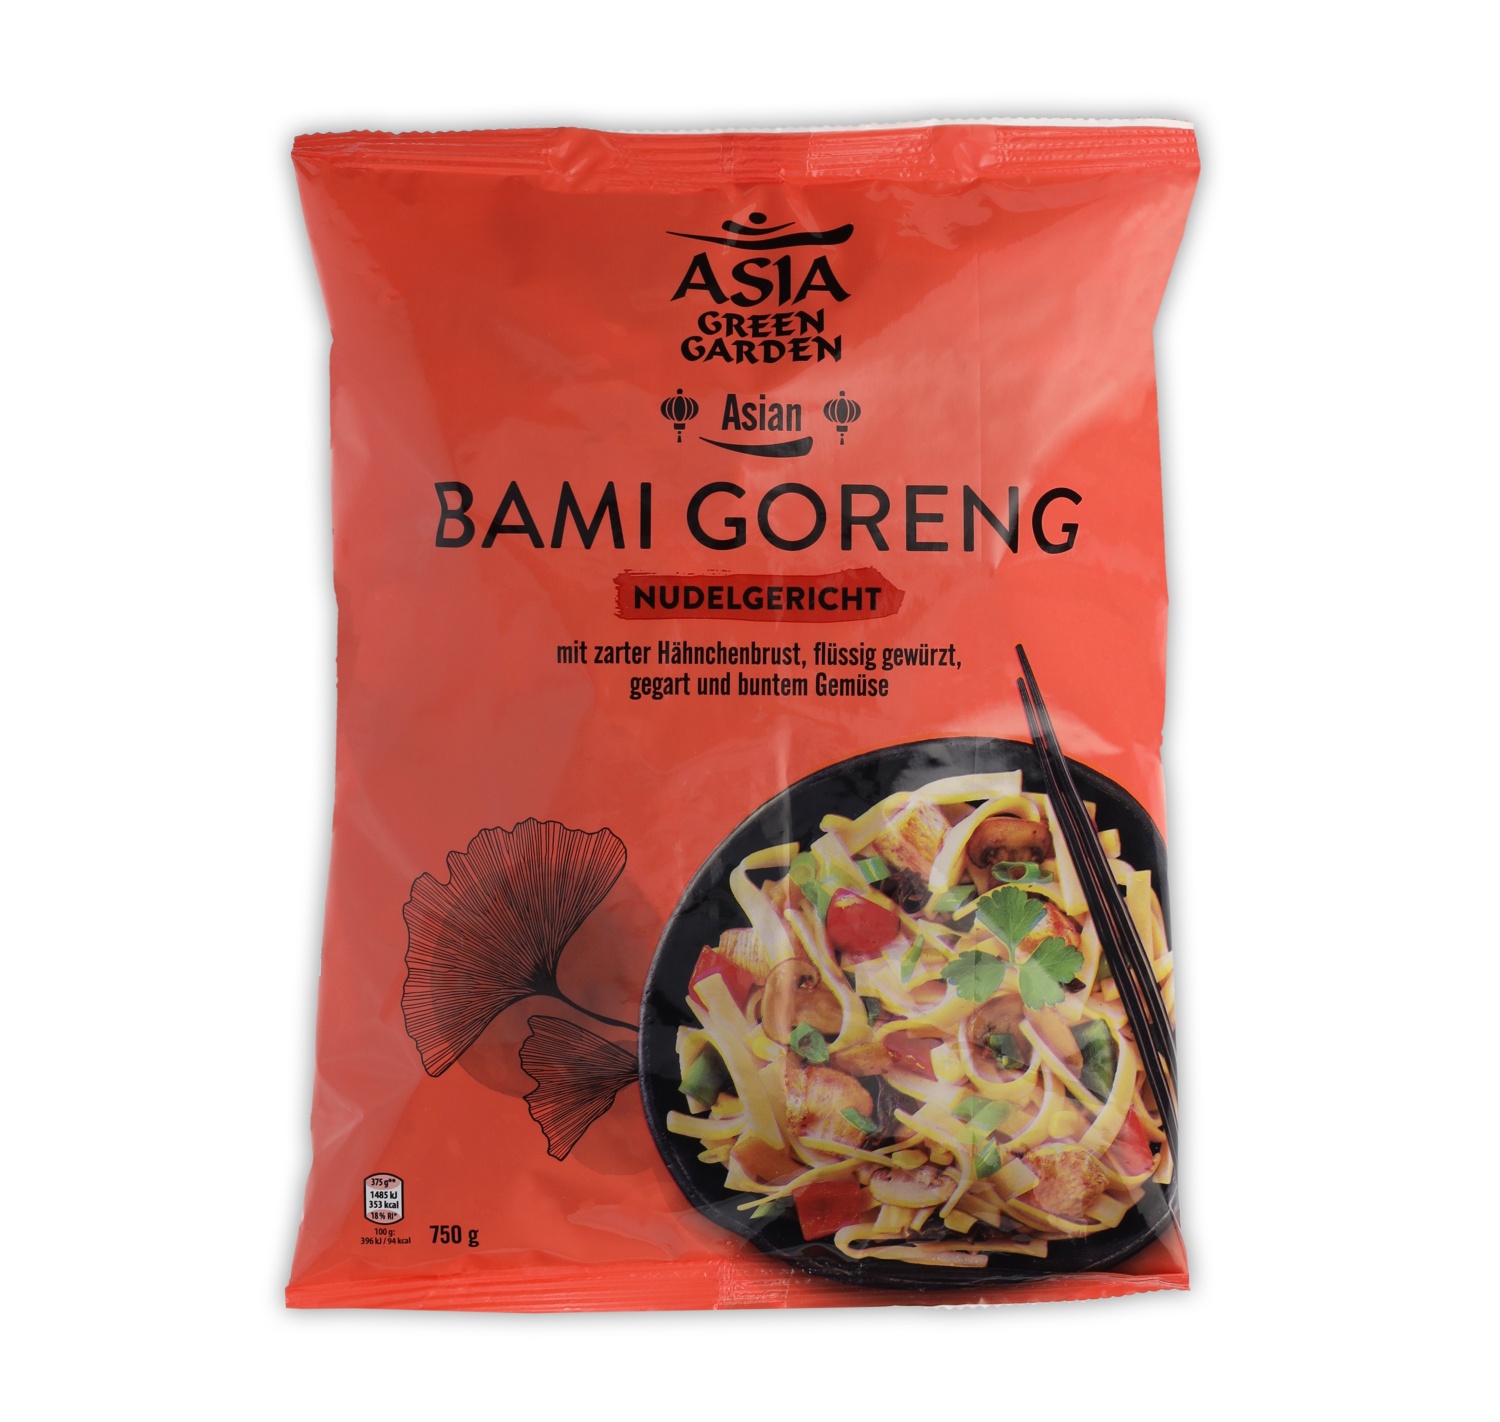 ASIA GREEN GARDEN Pfannengericht, Bami Goreng